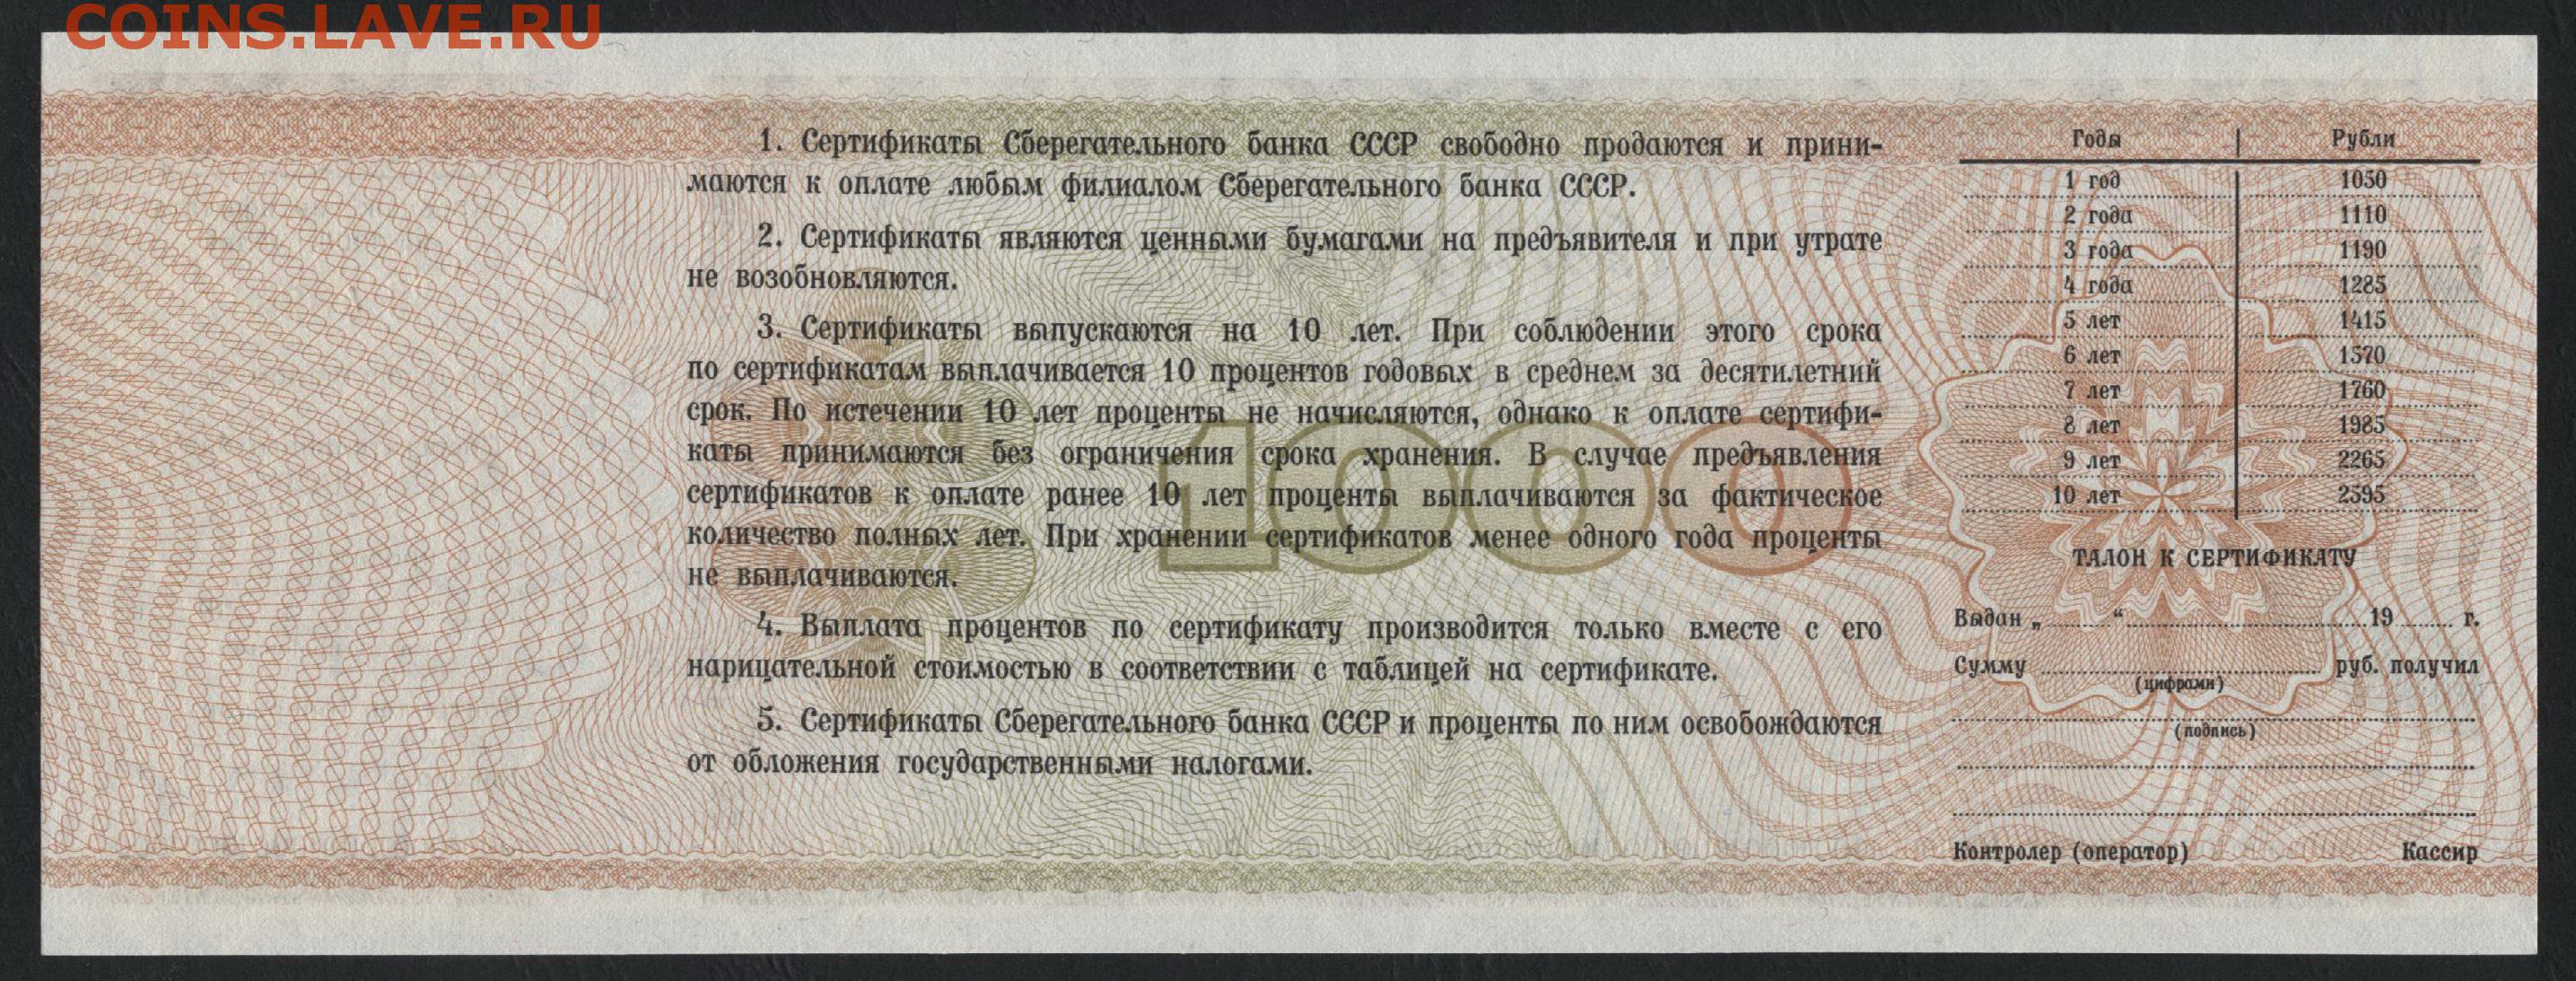 Сберегательный сертификат что это. Сертификат сберегательного банка СССР. Сертификат сберегательного банка СССР 1991 1000 рублей. Сберегательный сертификат СССР. Сертификат Сбербанка 1991 года.